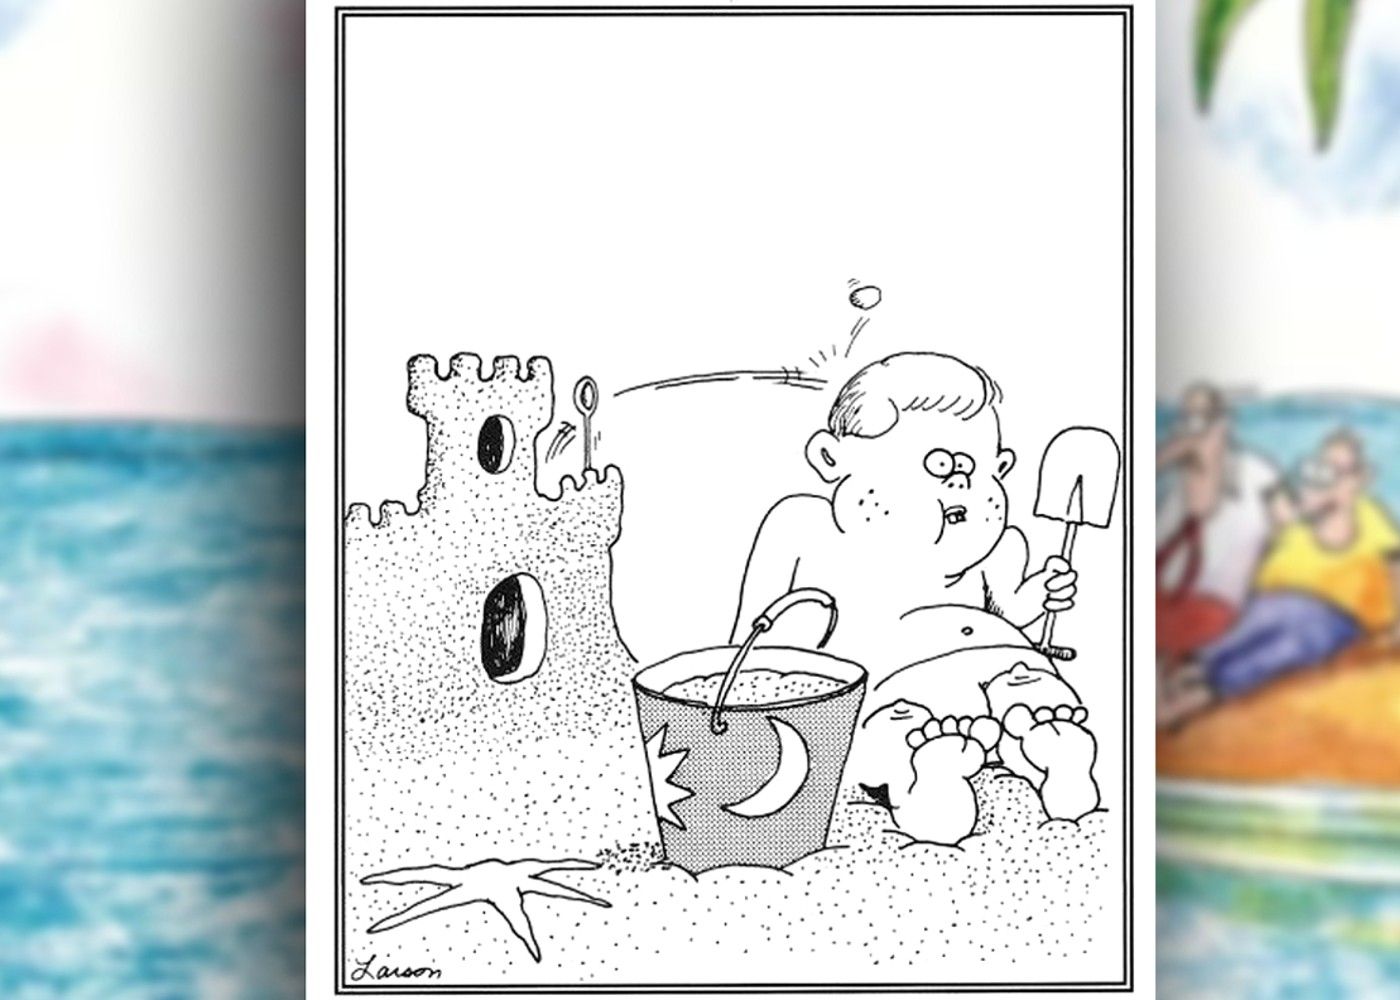 a história em quadrinhos do outro lado, onde uma criança é baleada por uma catapulta de dentro de seu próprio castelo de areia